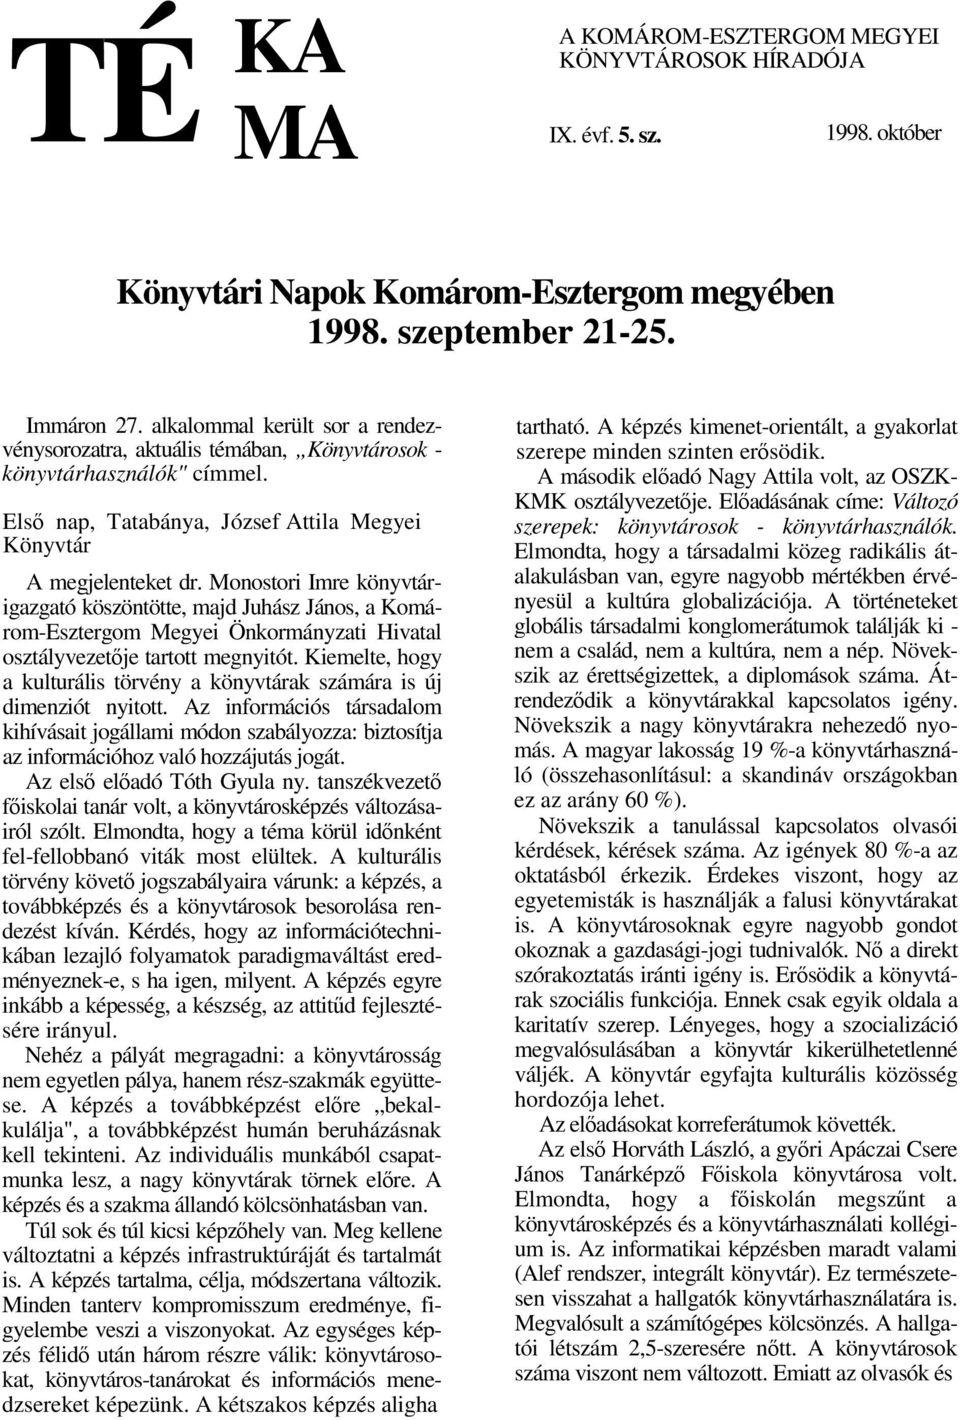 Monostori Imre könyvtárigazgató köszöntötte, majd Juhász János, a Komárom-Esztergom Megyei Önkormányzati Hivatal osztályvezetje tartott megnyitót.